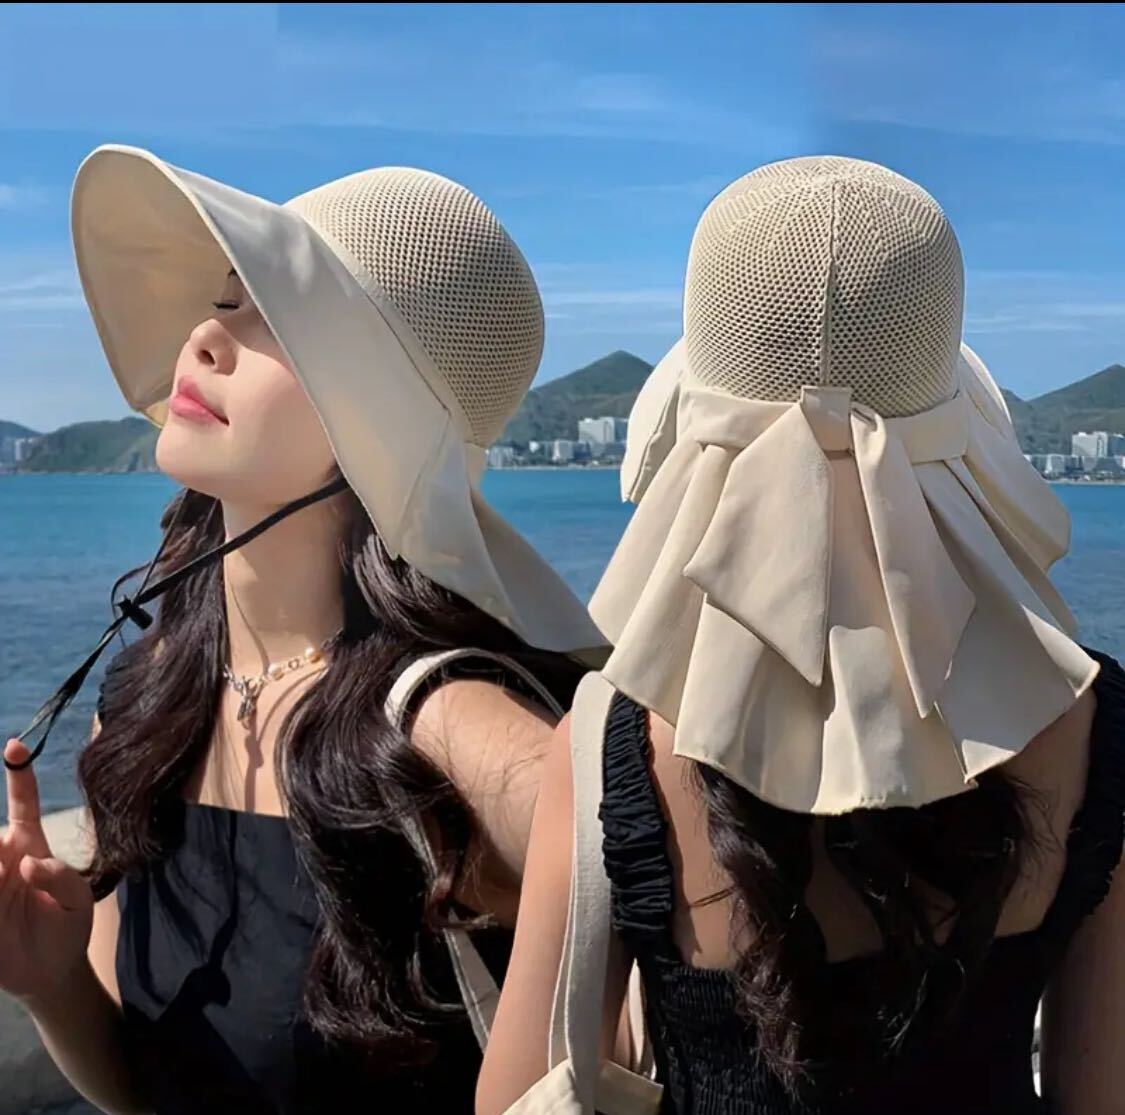 つば広 麦わら帽子 紫外線 夏 熱中症対策 通気性 UVカット 日焼け防止ストローハット 日よけ 紫外線対策 帽子 の画像3